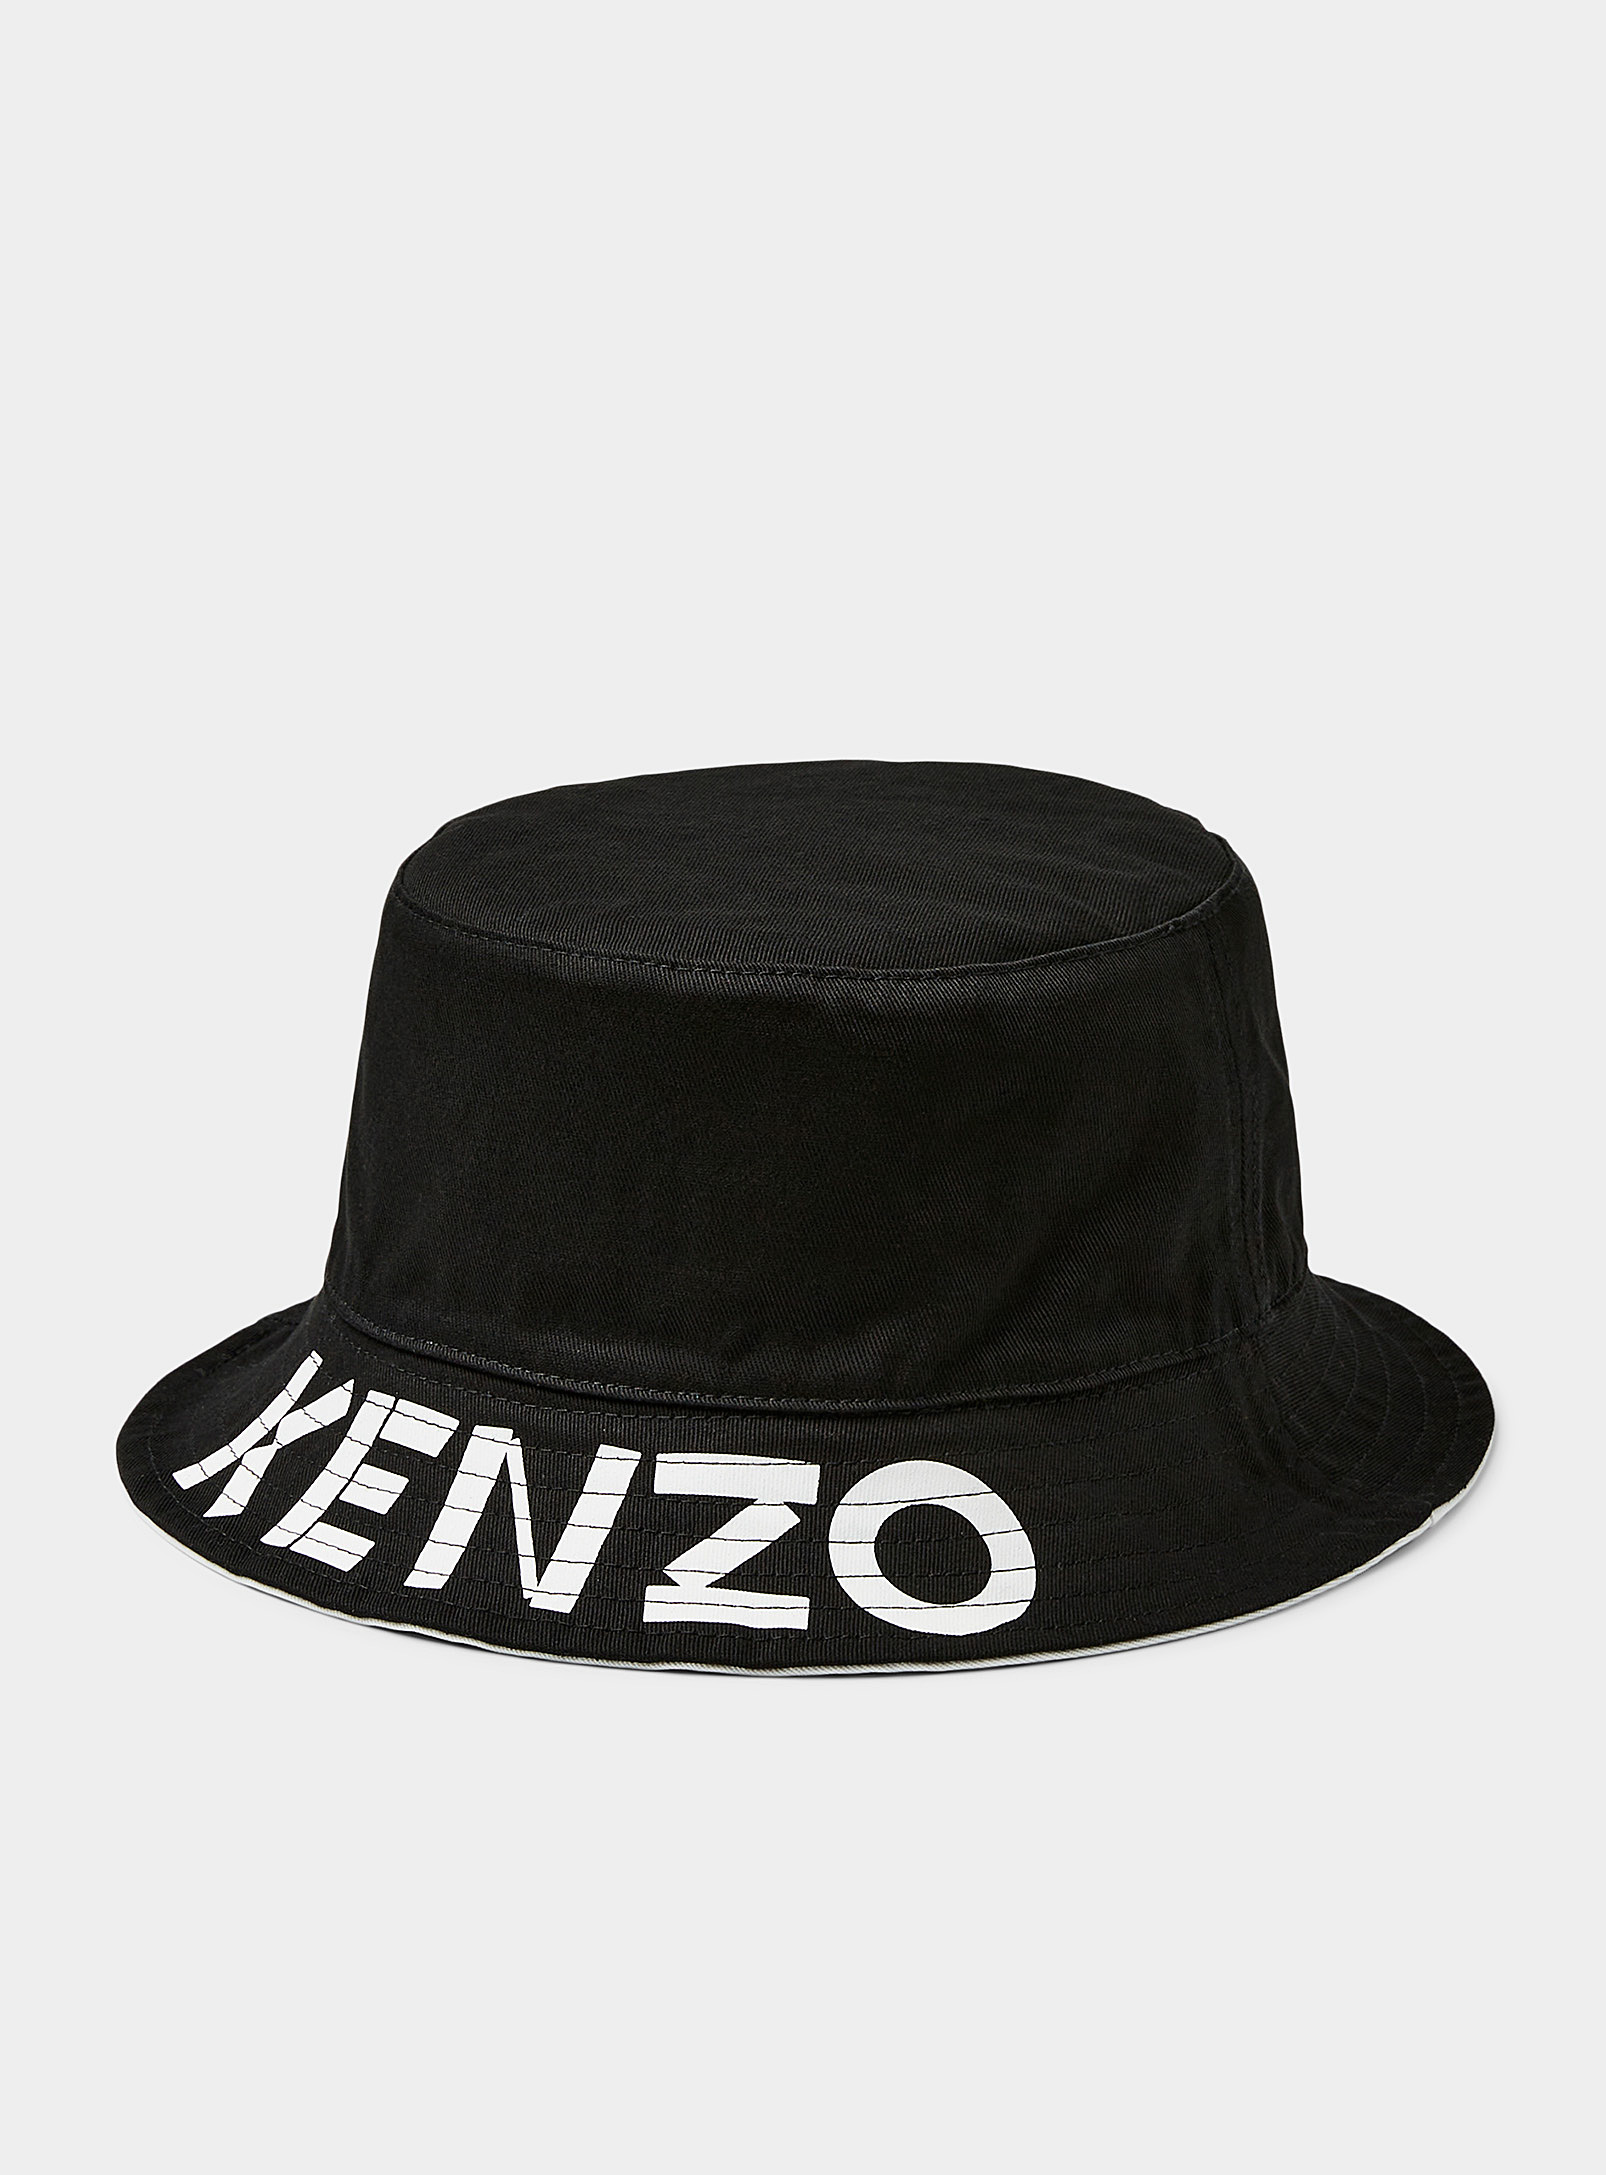 Kenzo - Men's Reversible bucket hat